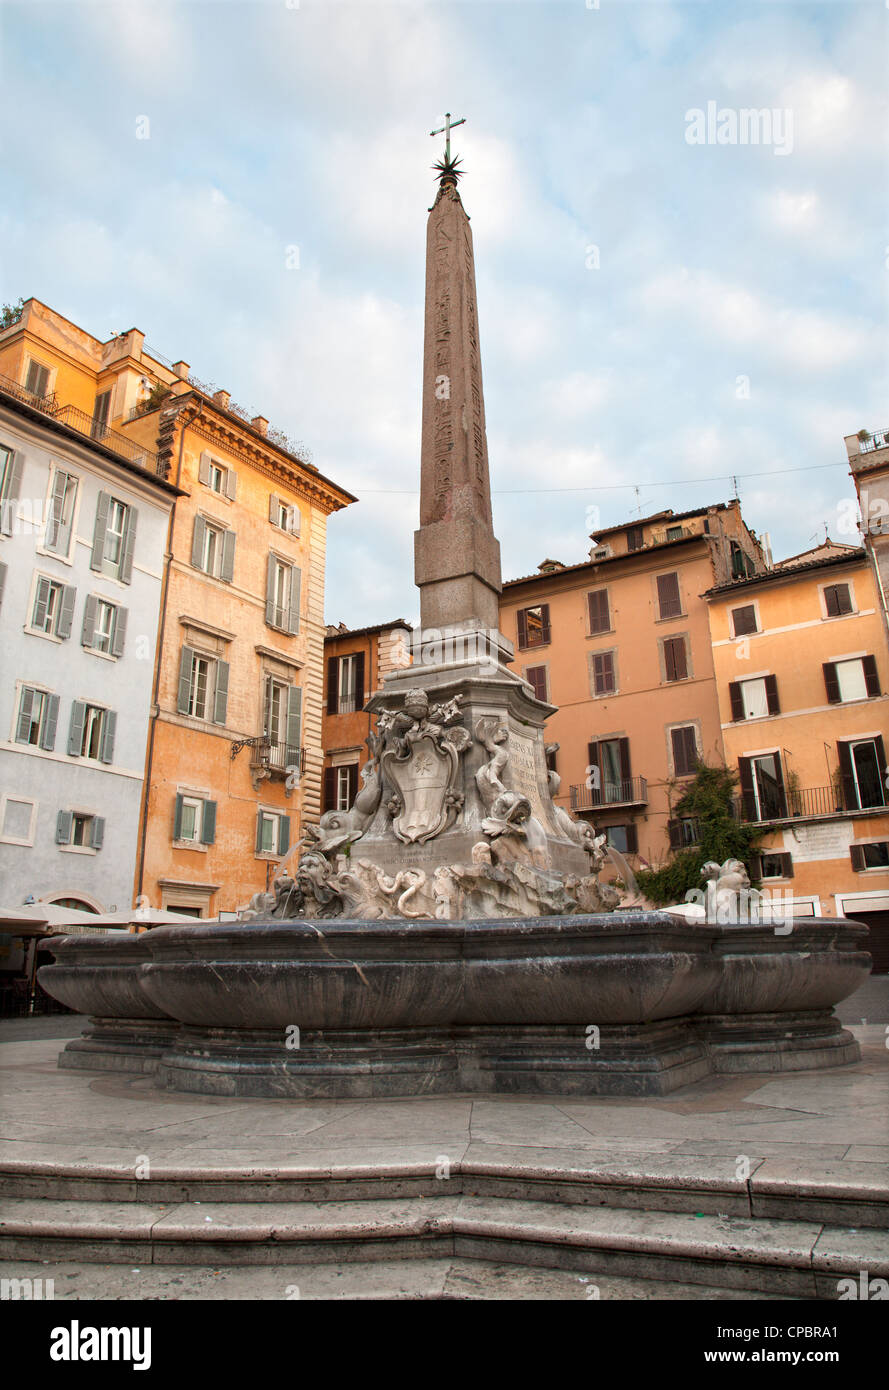 Rome - fountain and obelis from Piazza della Rotonda Stock Photo